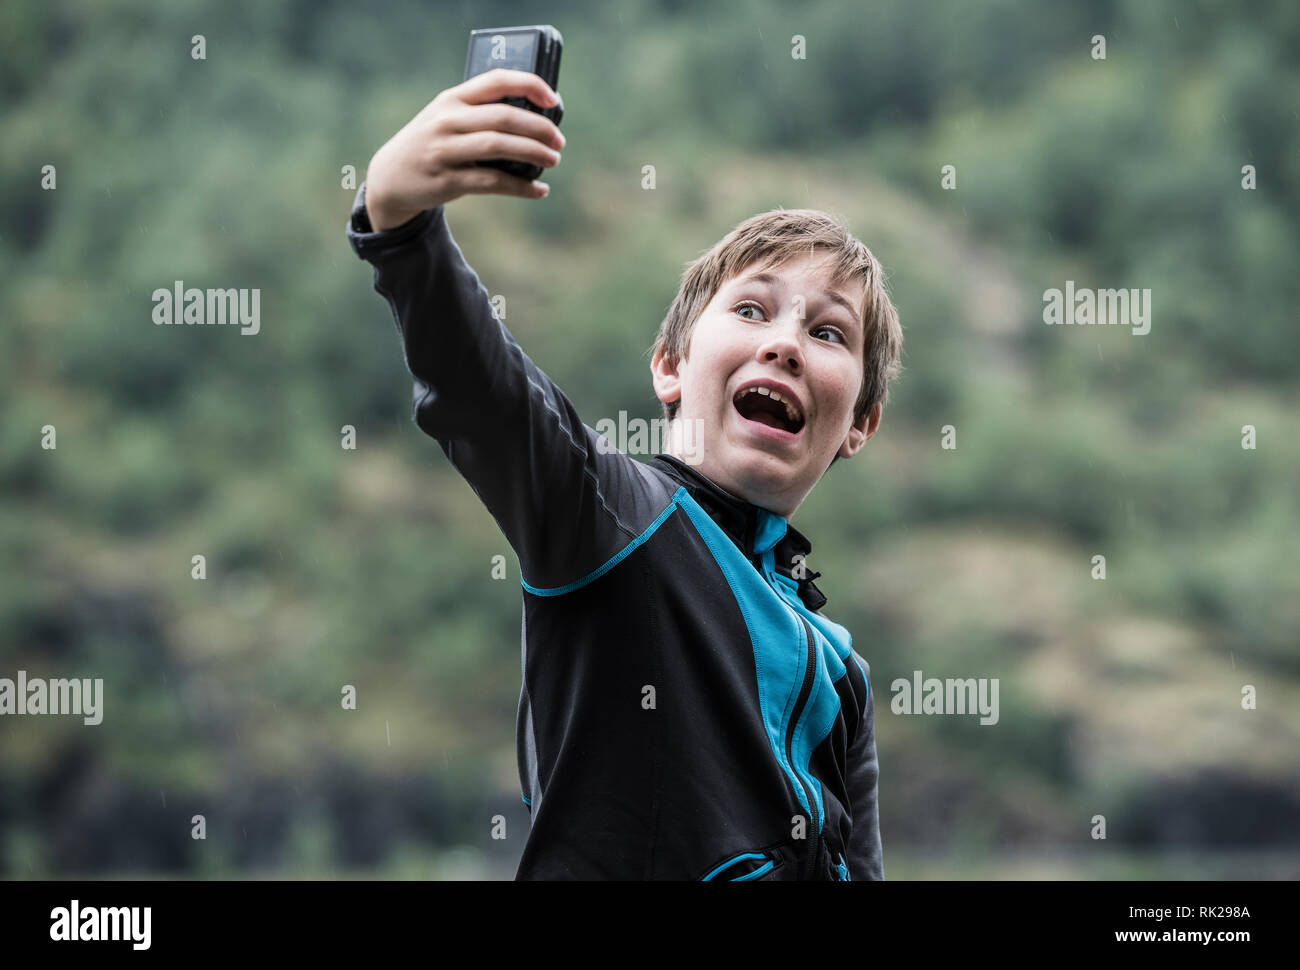 Cándido retrato de joven teniendo selfie usando el teléfono móvil, el bosque en el fondo, cerrar Foto de stock